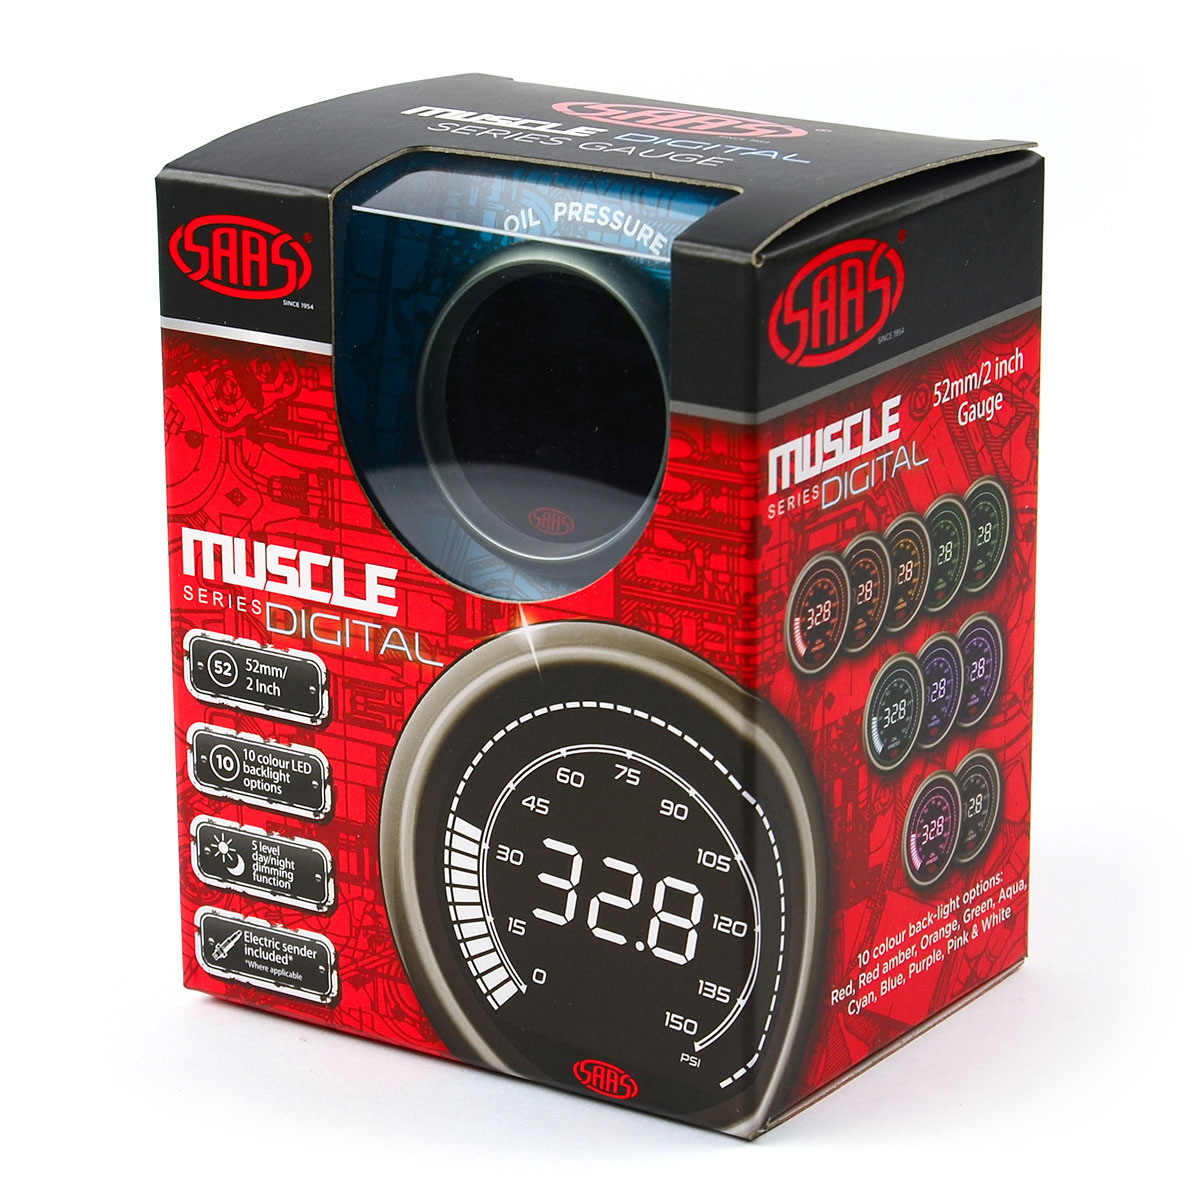 Oil Pressure Gauge 0-150 psi 52mm Muscle Digital Series